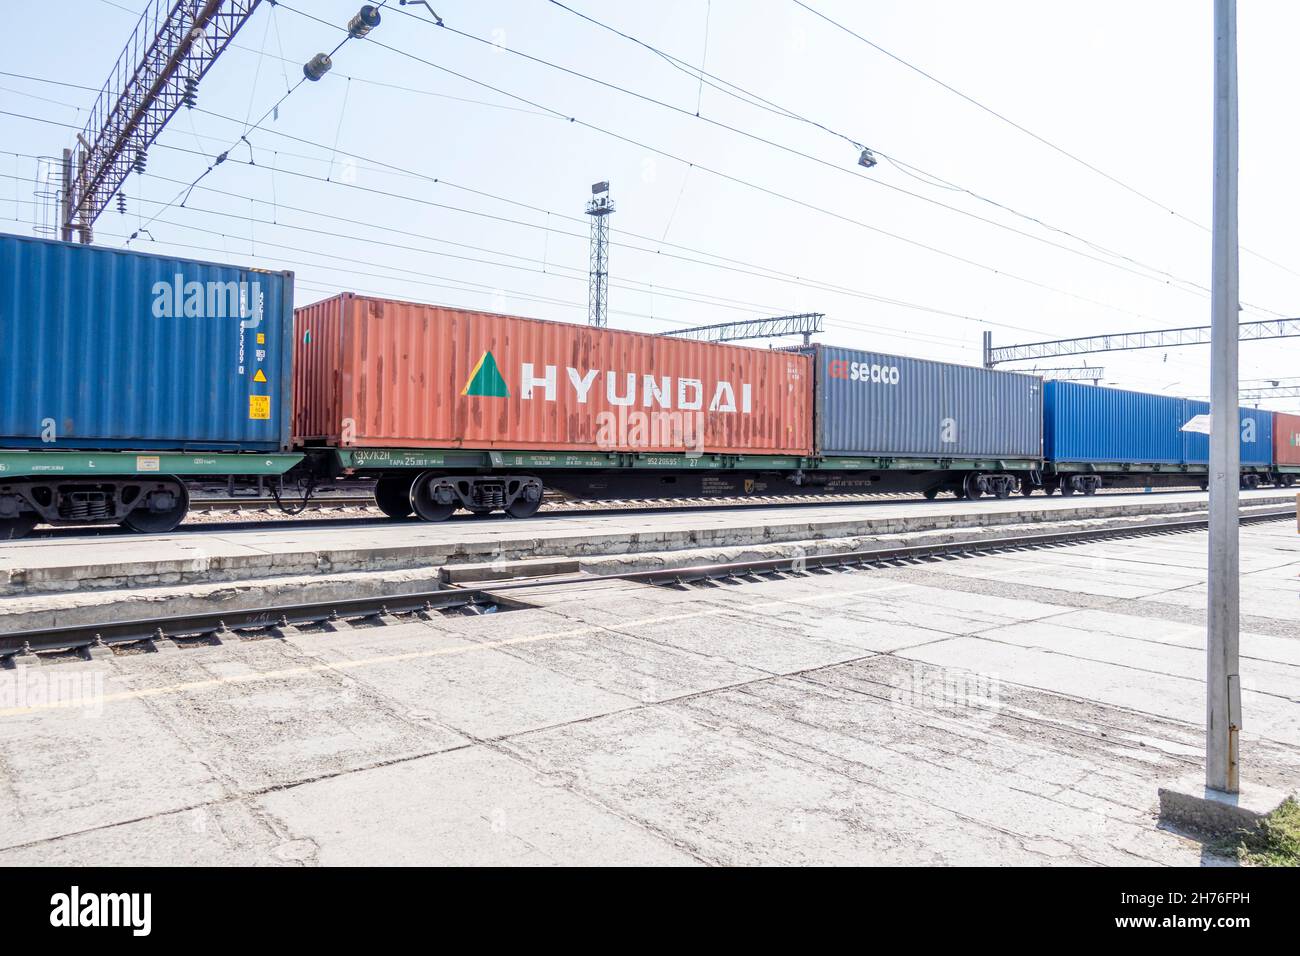 Un train frieght avec un conteneur Hyundai transportant des marchandises au Kazakhstan depuis la Corée.Train de marchandises sur chemin de fer. Banque D'Images